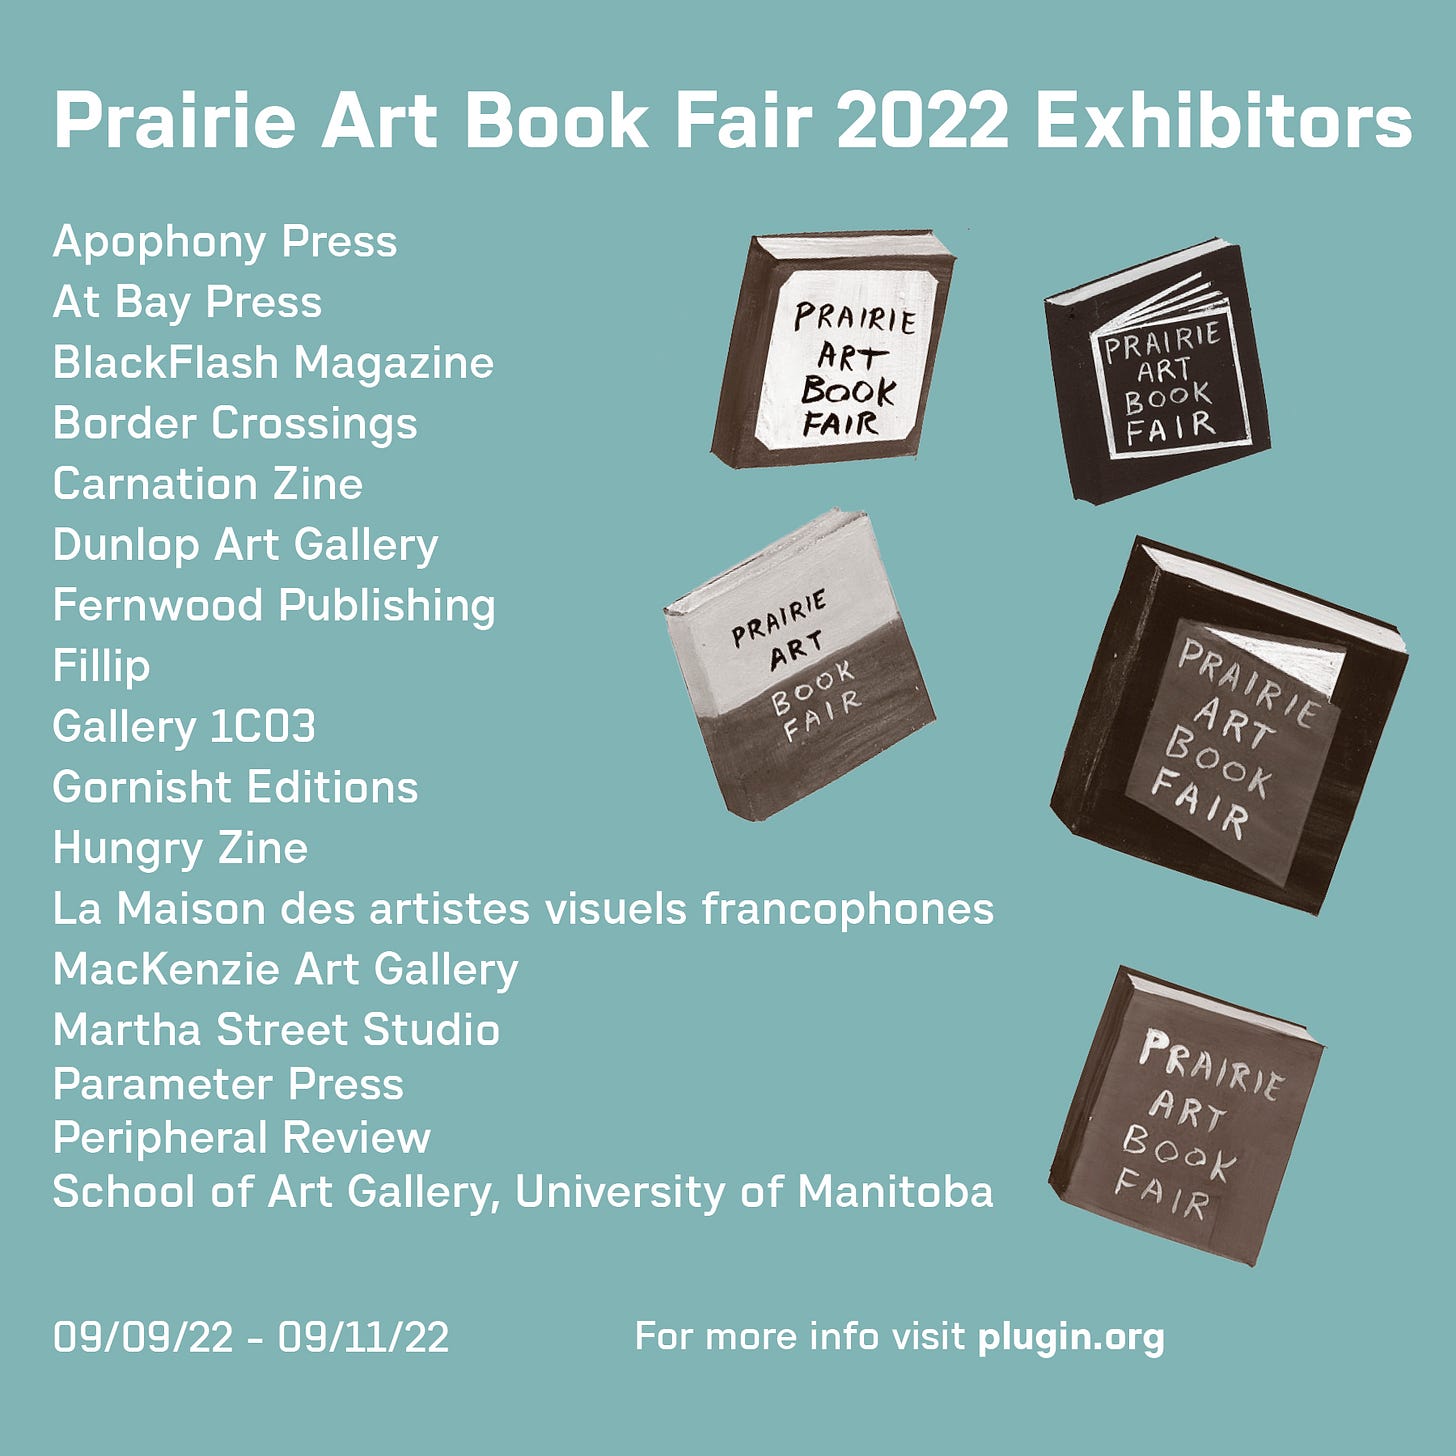 list of participants in the prairie art book fair 2022